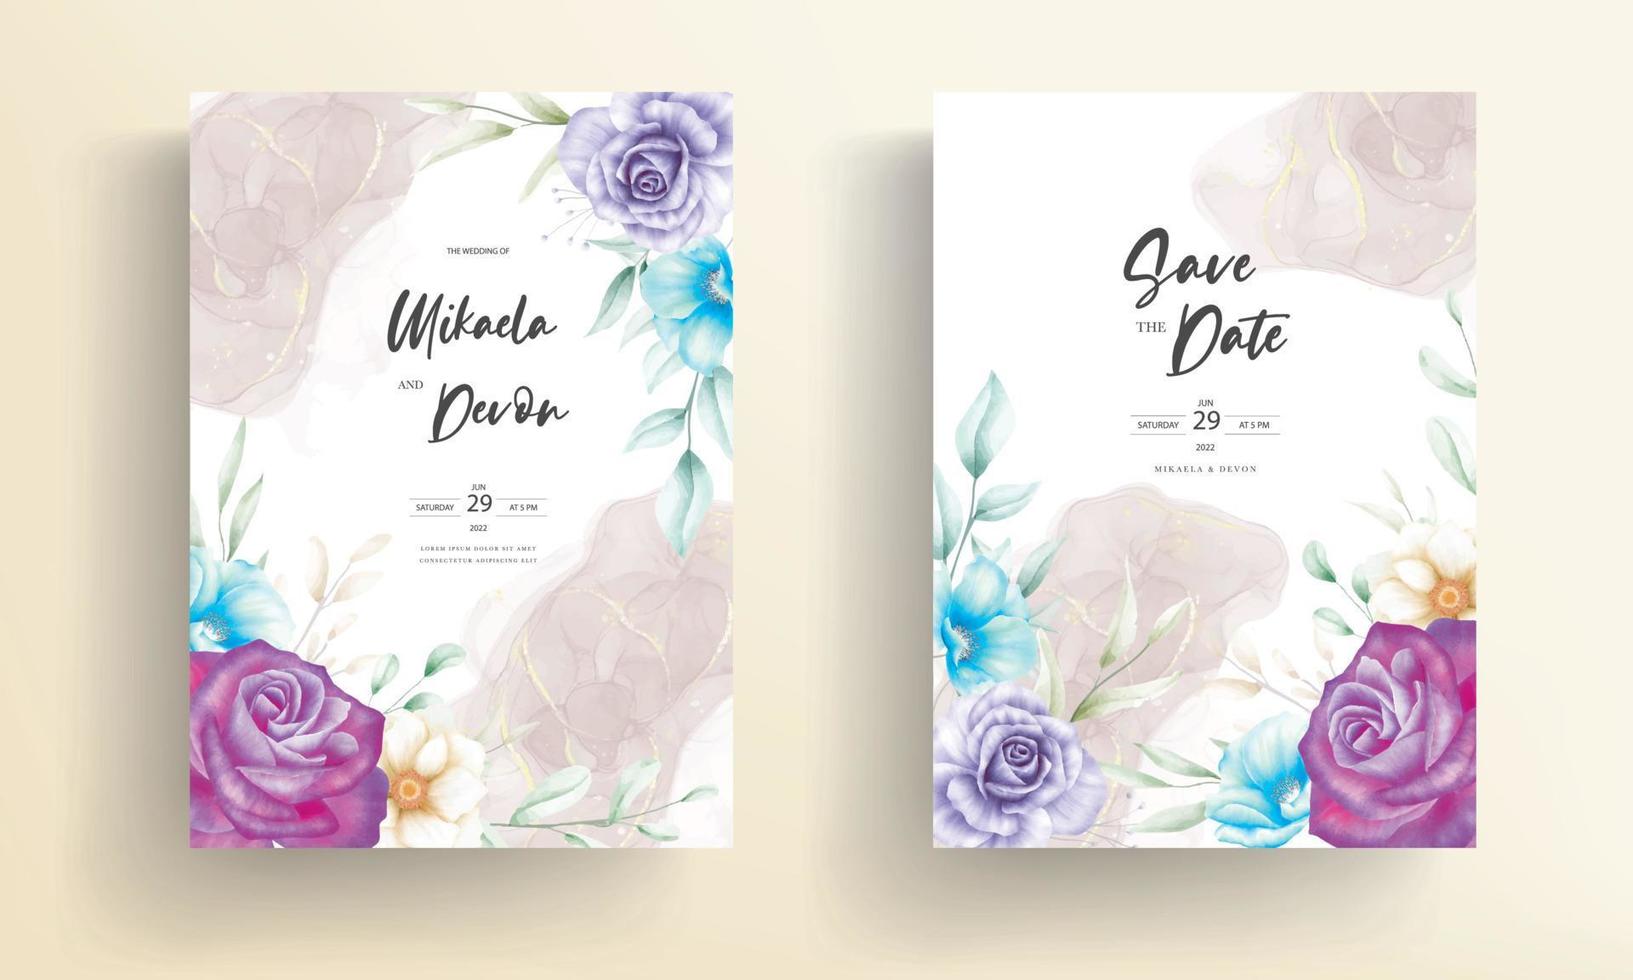 cartão de convite de casamento floral em aquarela elegante e luxuoso vetor